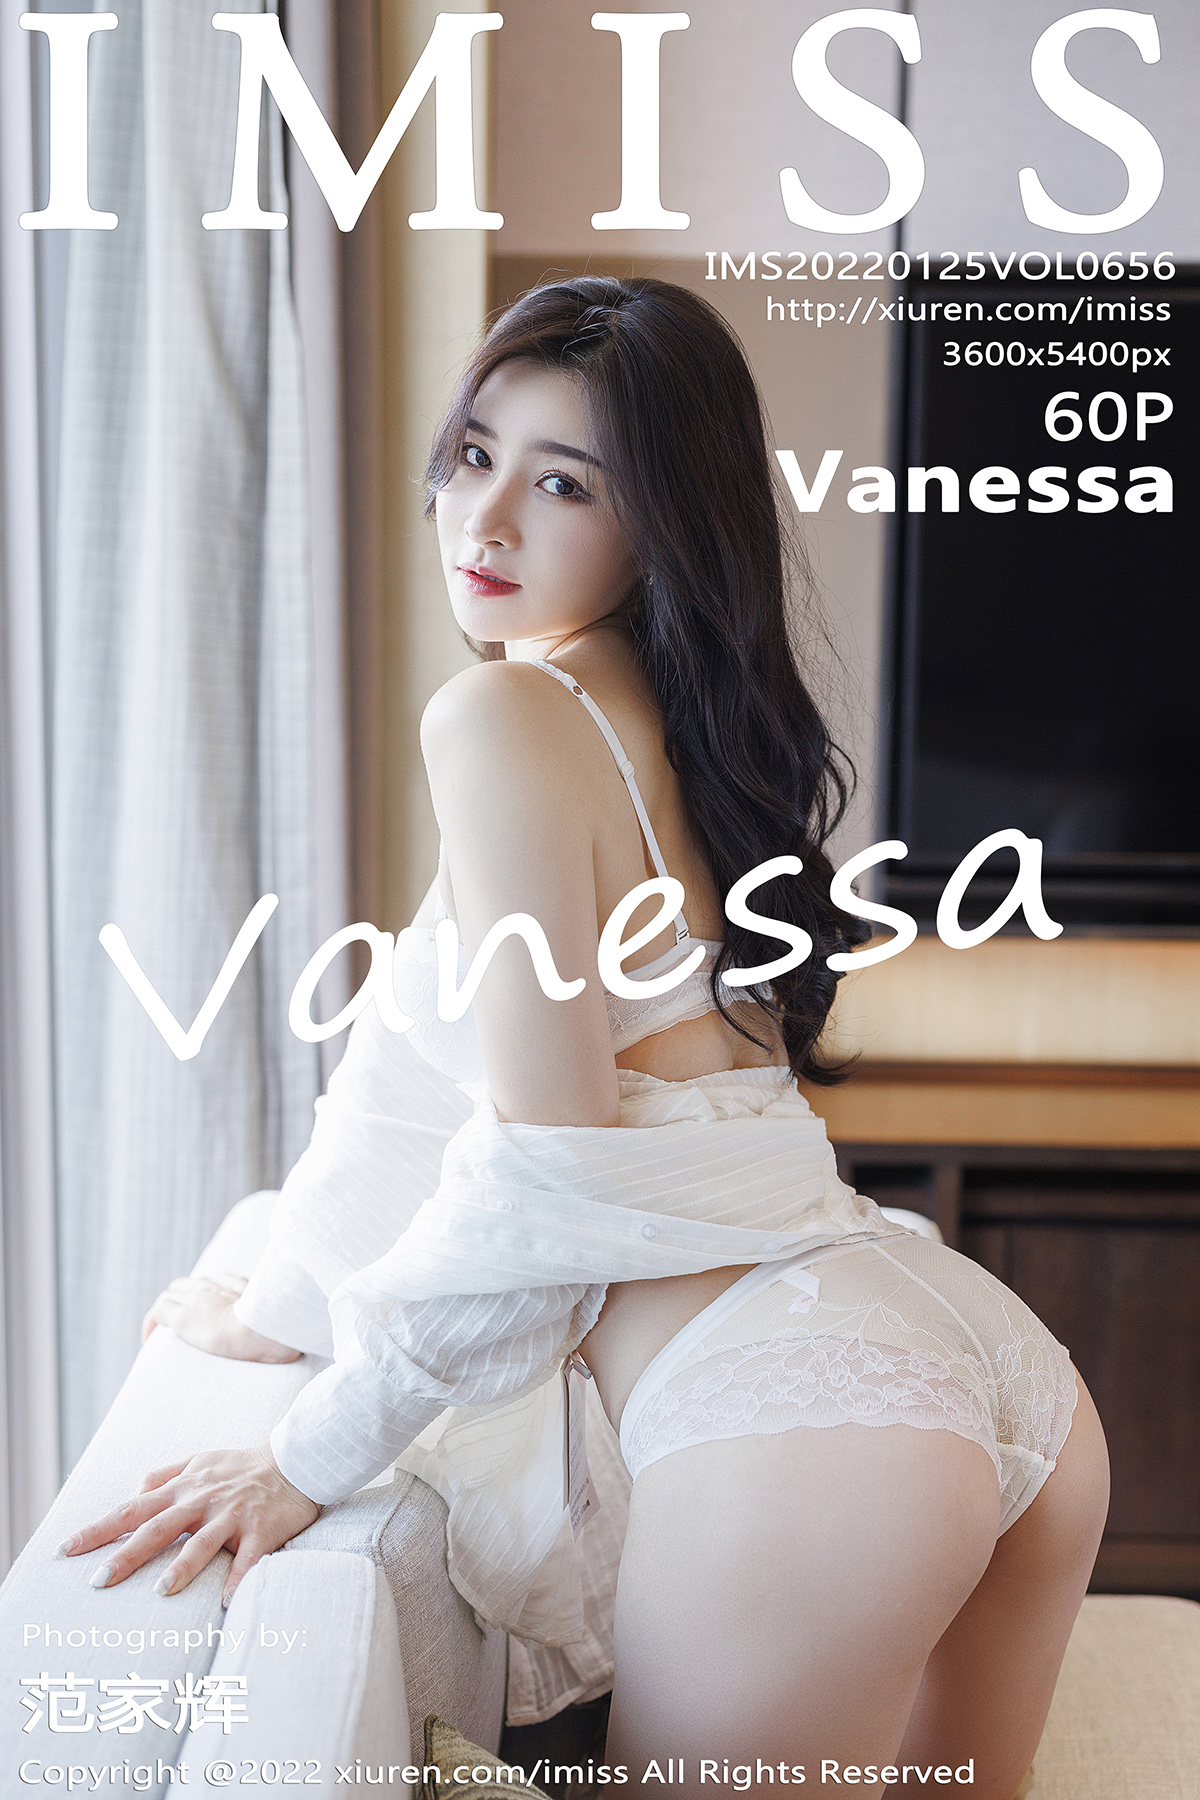 【IMISS愛蜜社】2022.01.25 Vol.656 Vanessa 完整版無水印寫真【60P】 - 貼圖 - 絲襪美腿 -